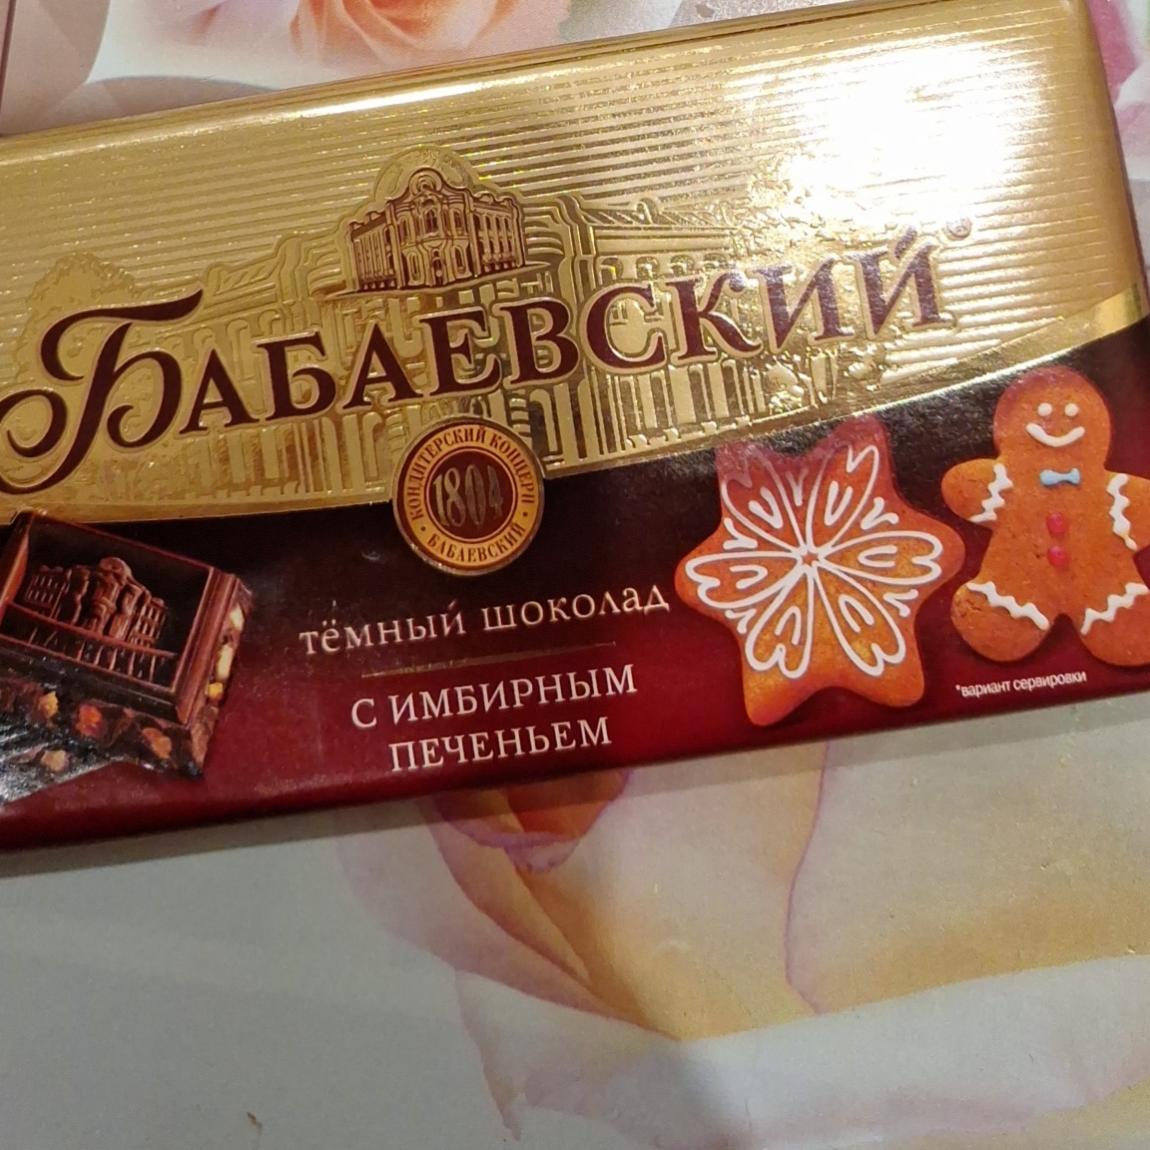 Фото - Шоколад тёмный с имбирным печеньем Бабаевский